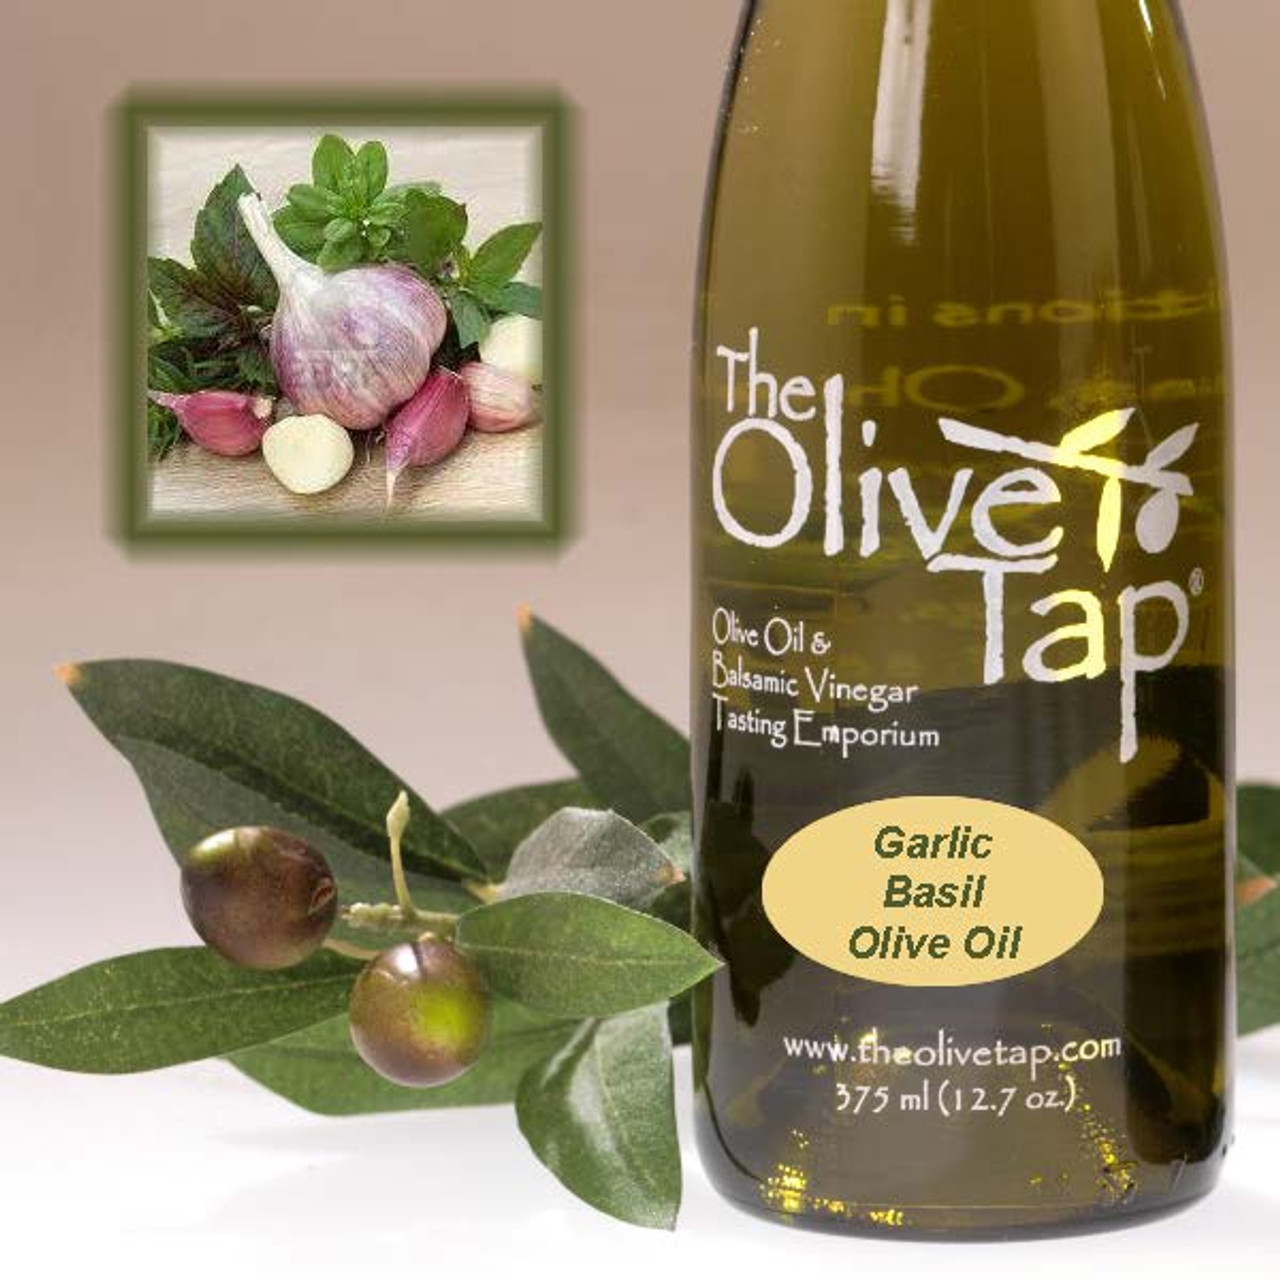 Garlic Basil Olive Oil